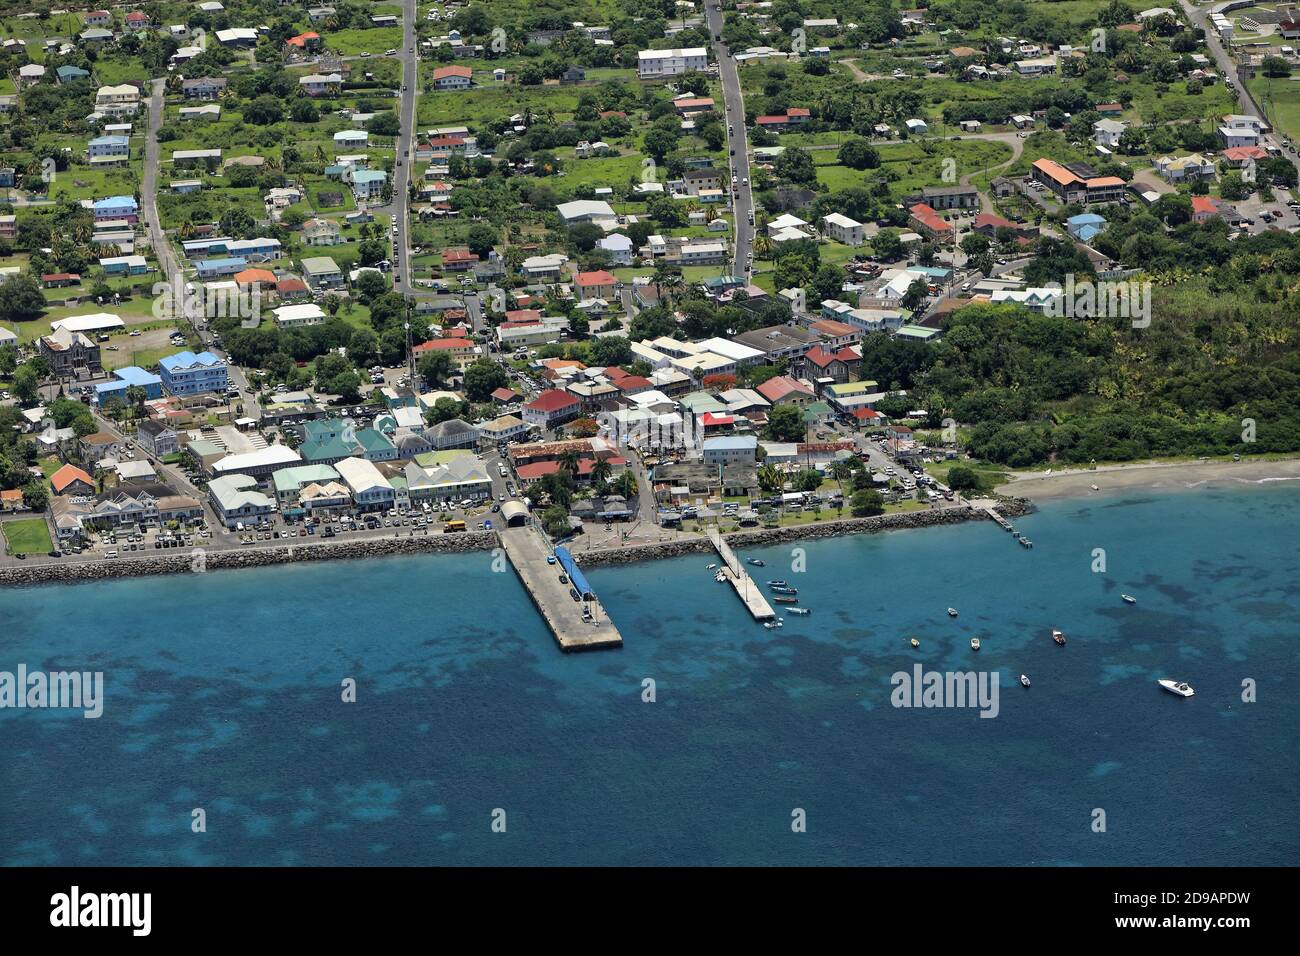 I Caraibi, St. Kitts e Nevis: Vista aerea della baia e del porto turistico di Charlestown sull'isola Nevis. Foto Stock